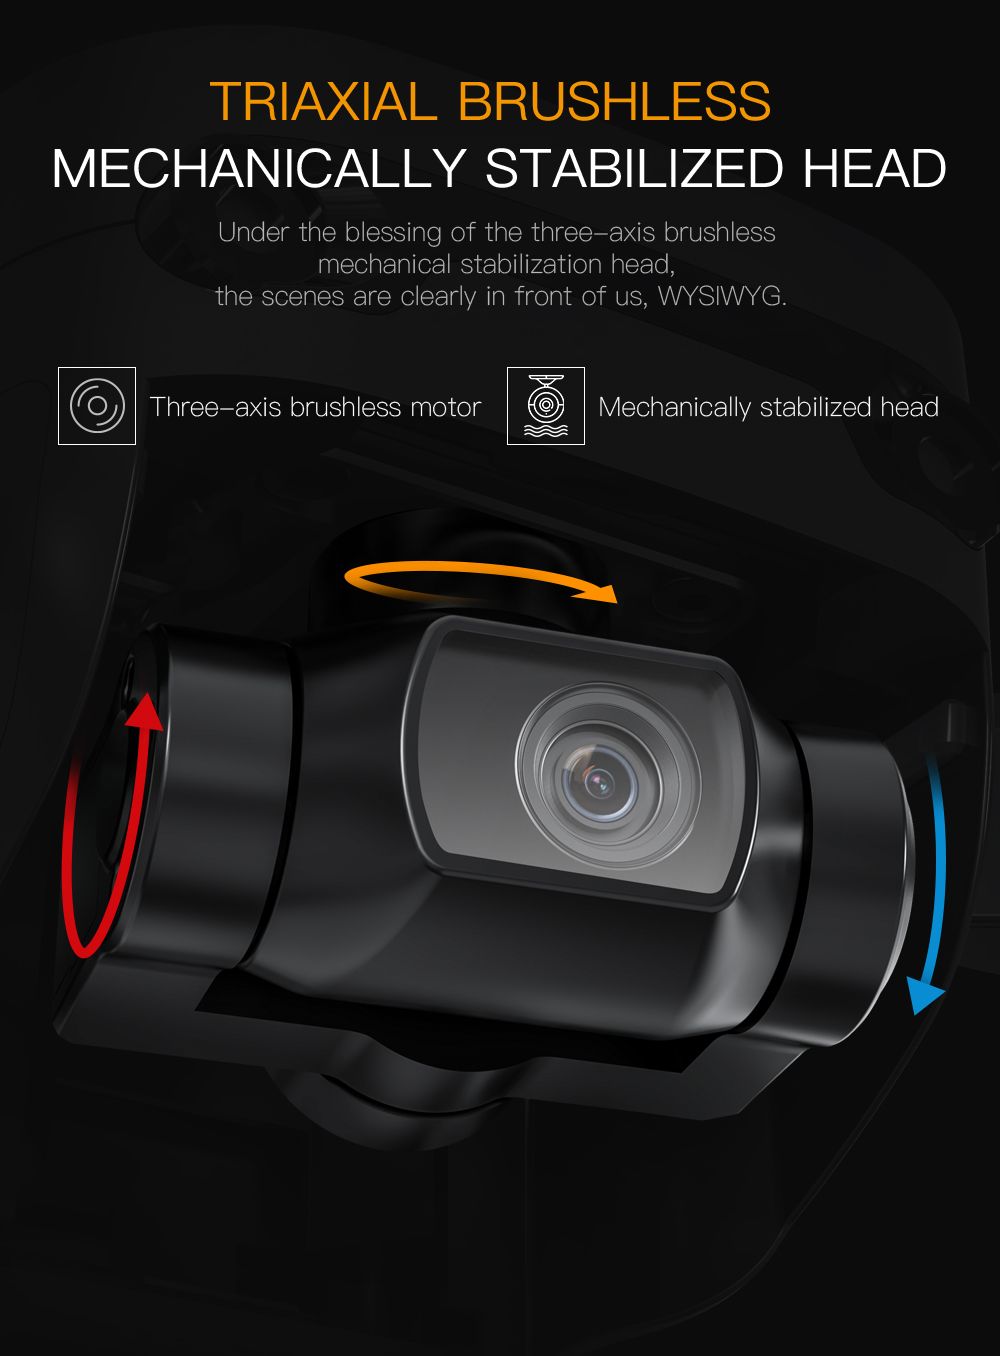 Globale Drone GD96 Sony-kamera 3-as borsellose kardantjie-dreuning met dubbele visuele hindernisvermyding (7)